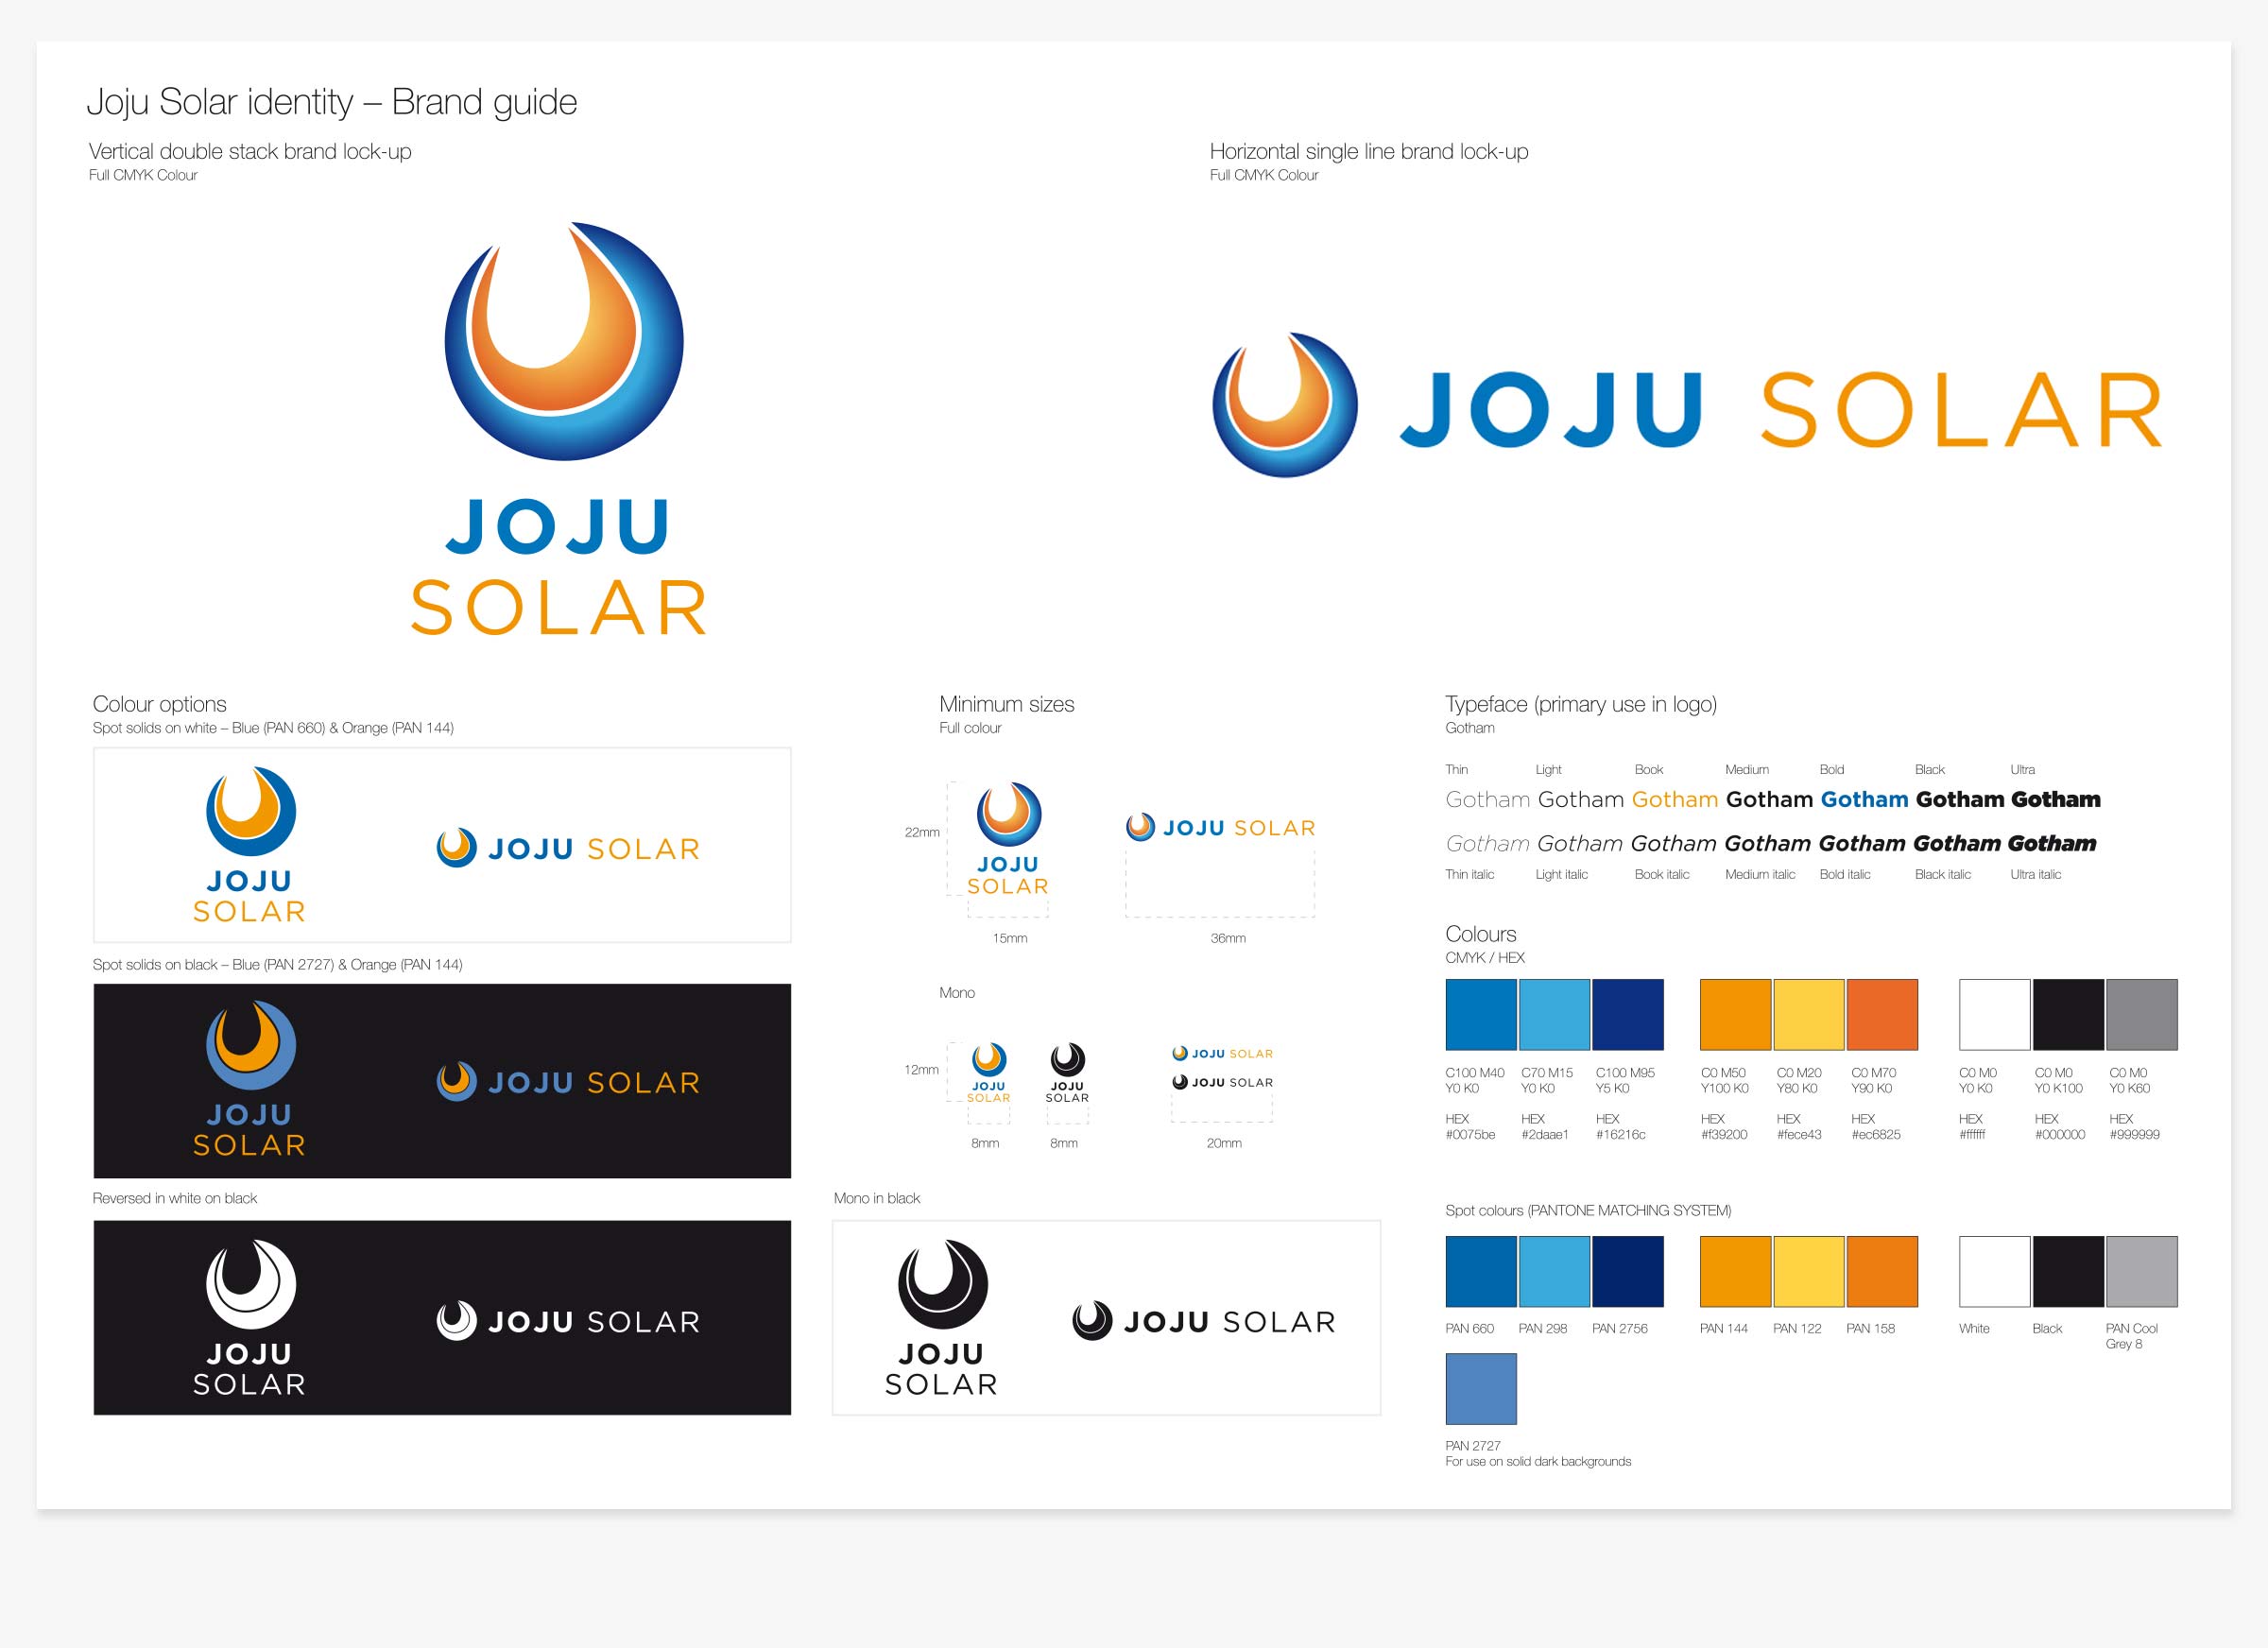 Joju Solar guideline document